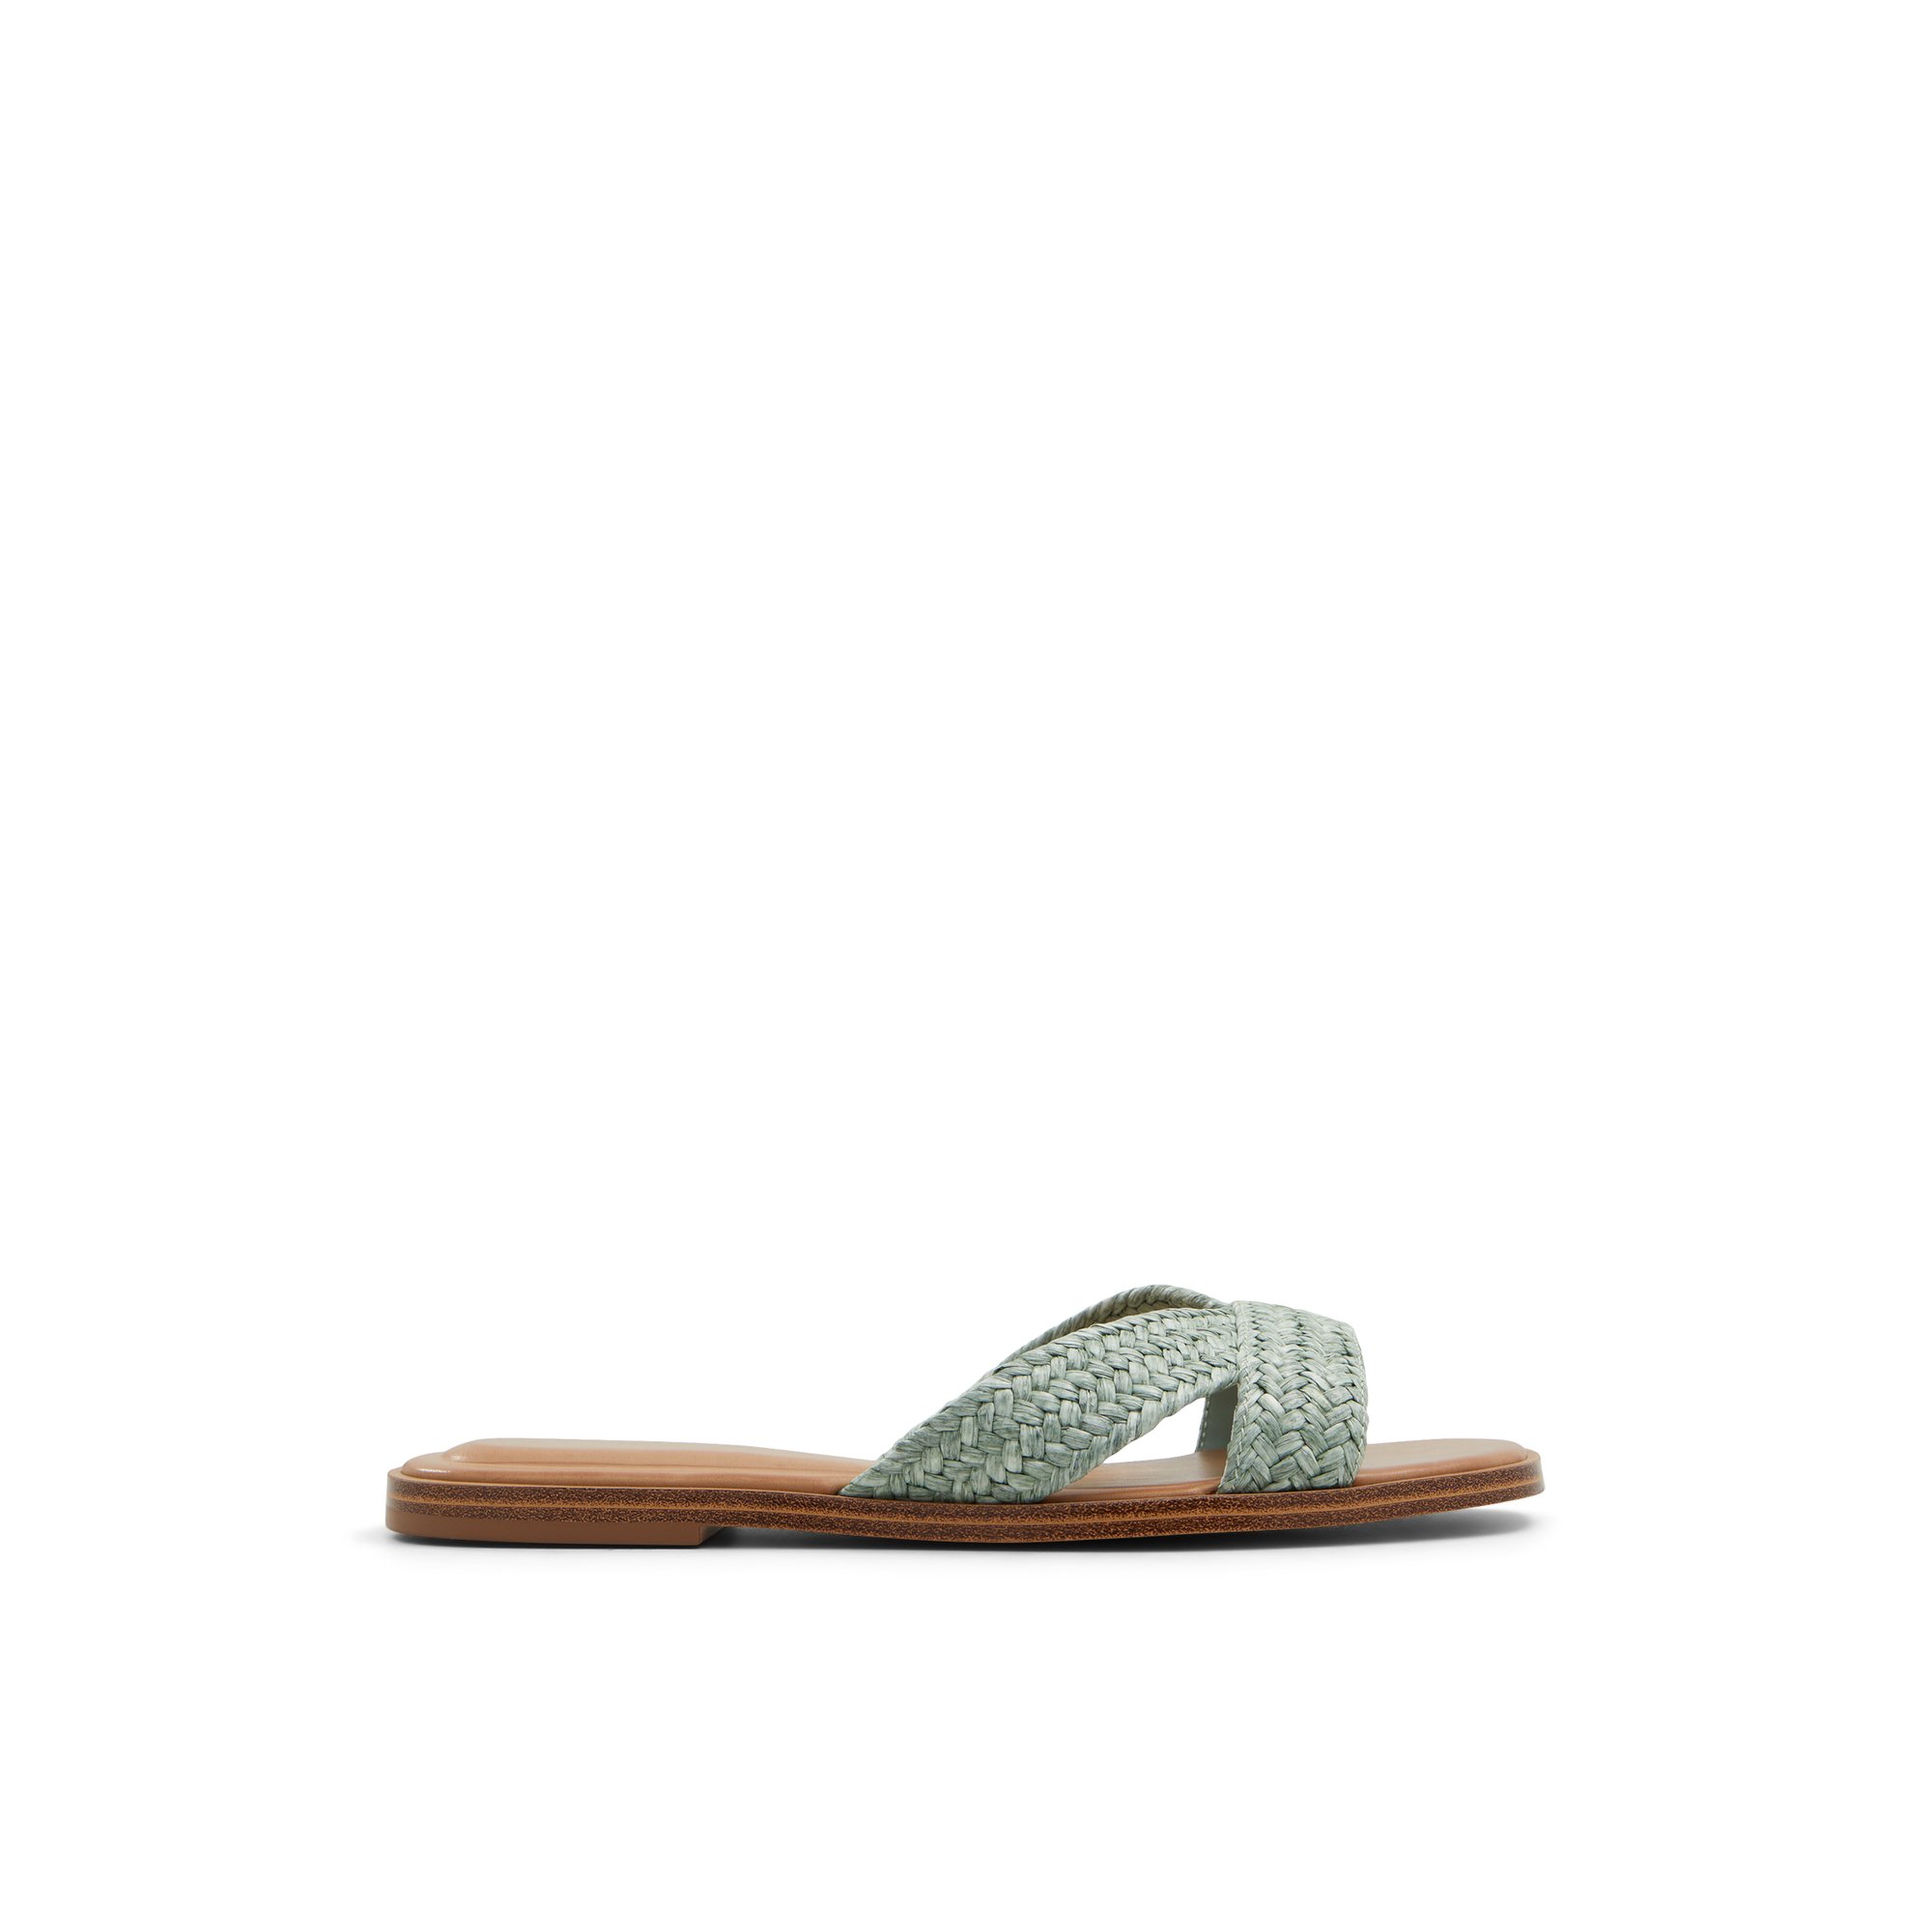 ALDO Caria - Women's Sandals Flats - Green